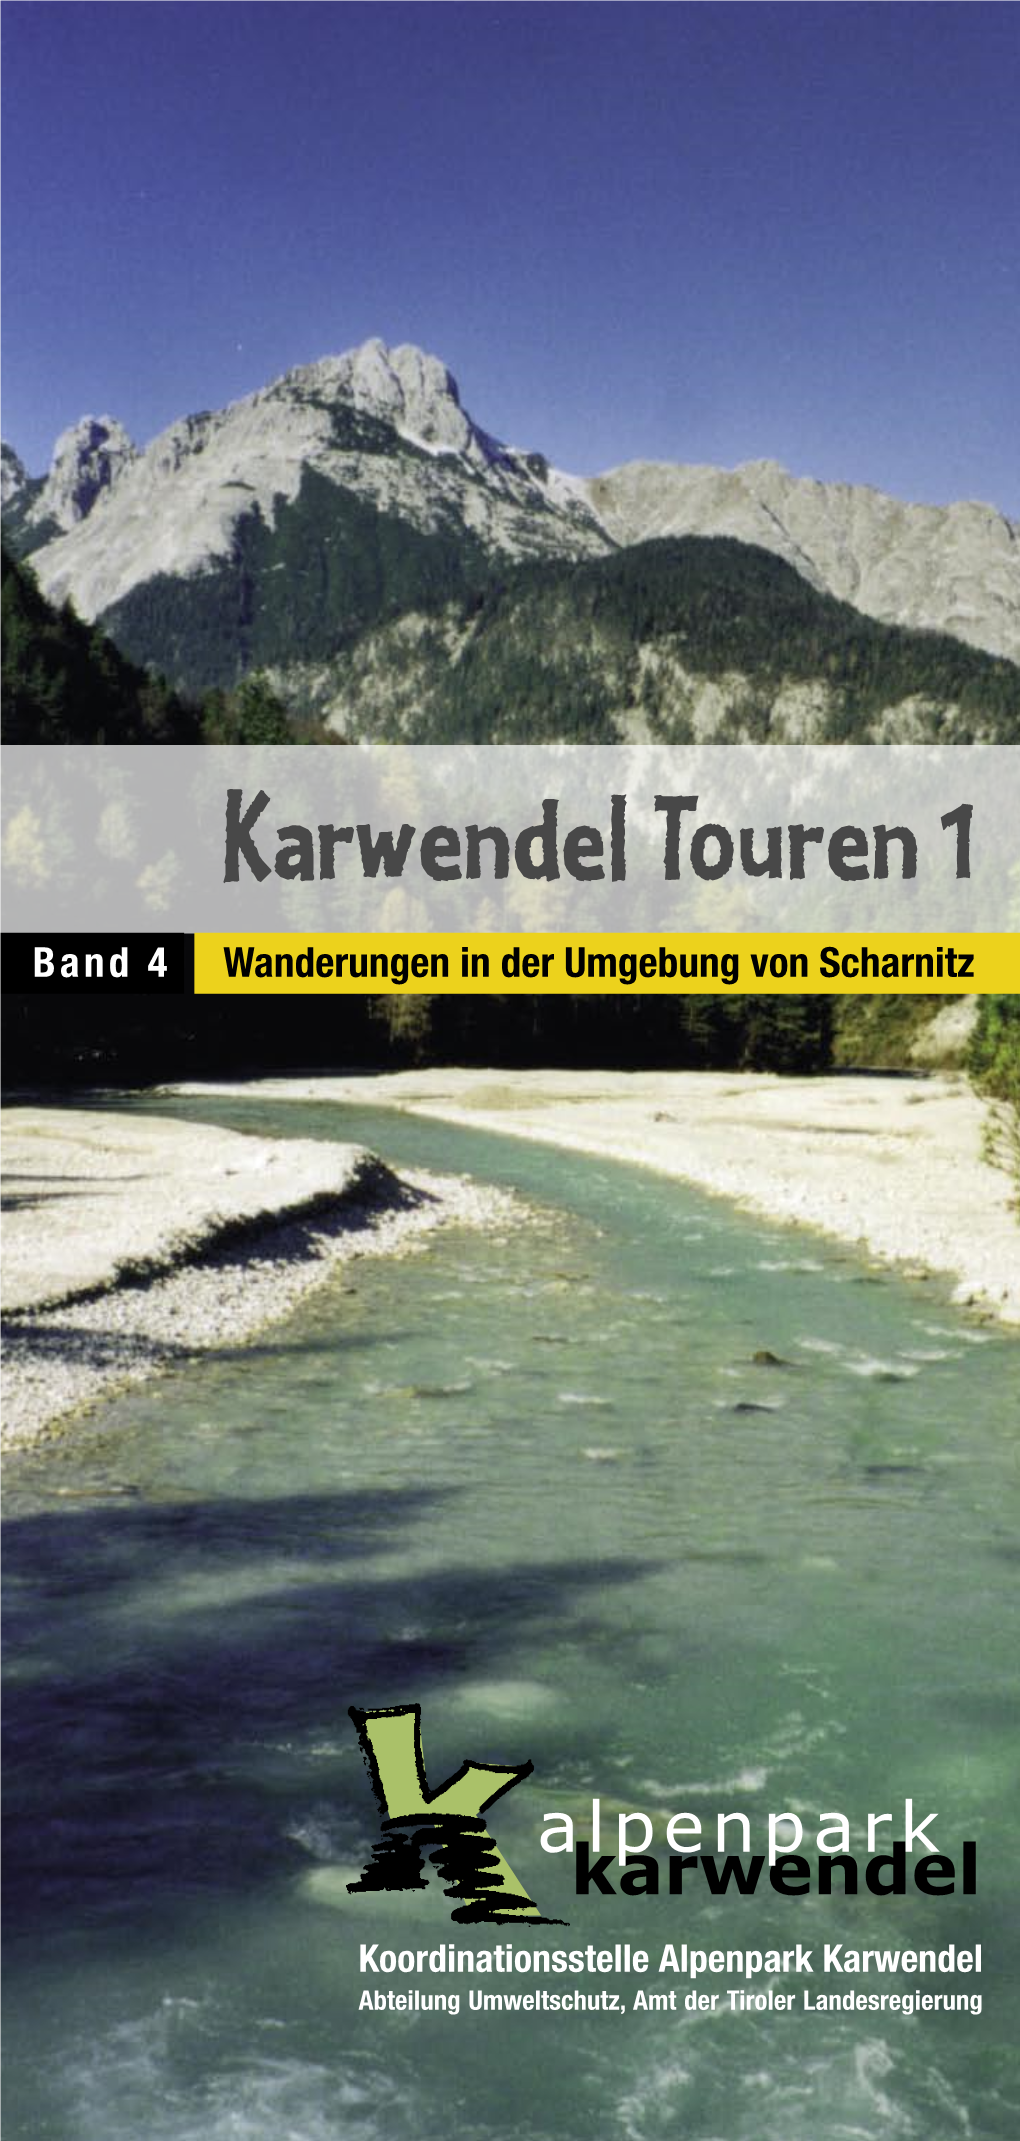 Die Touren-Wanderwege Im Karwendel